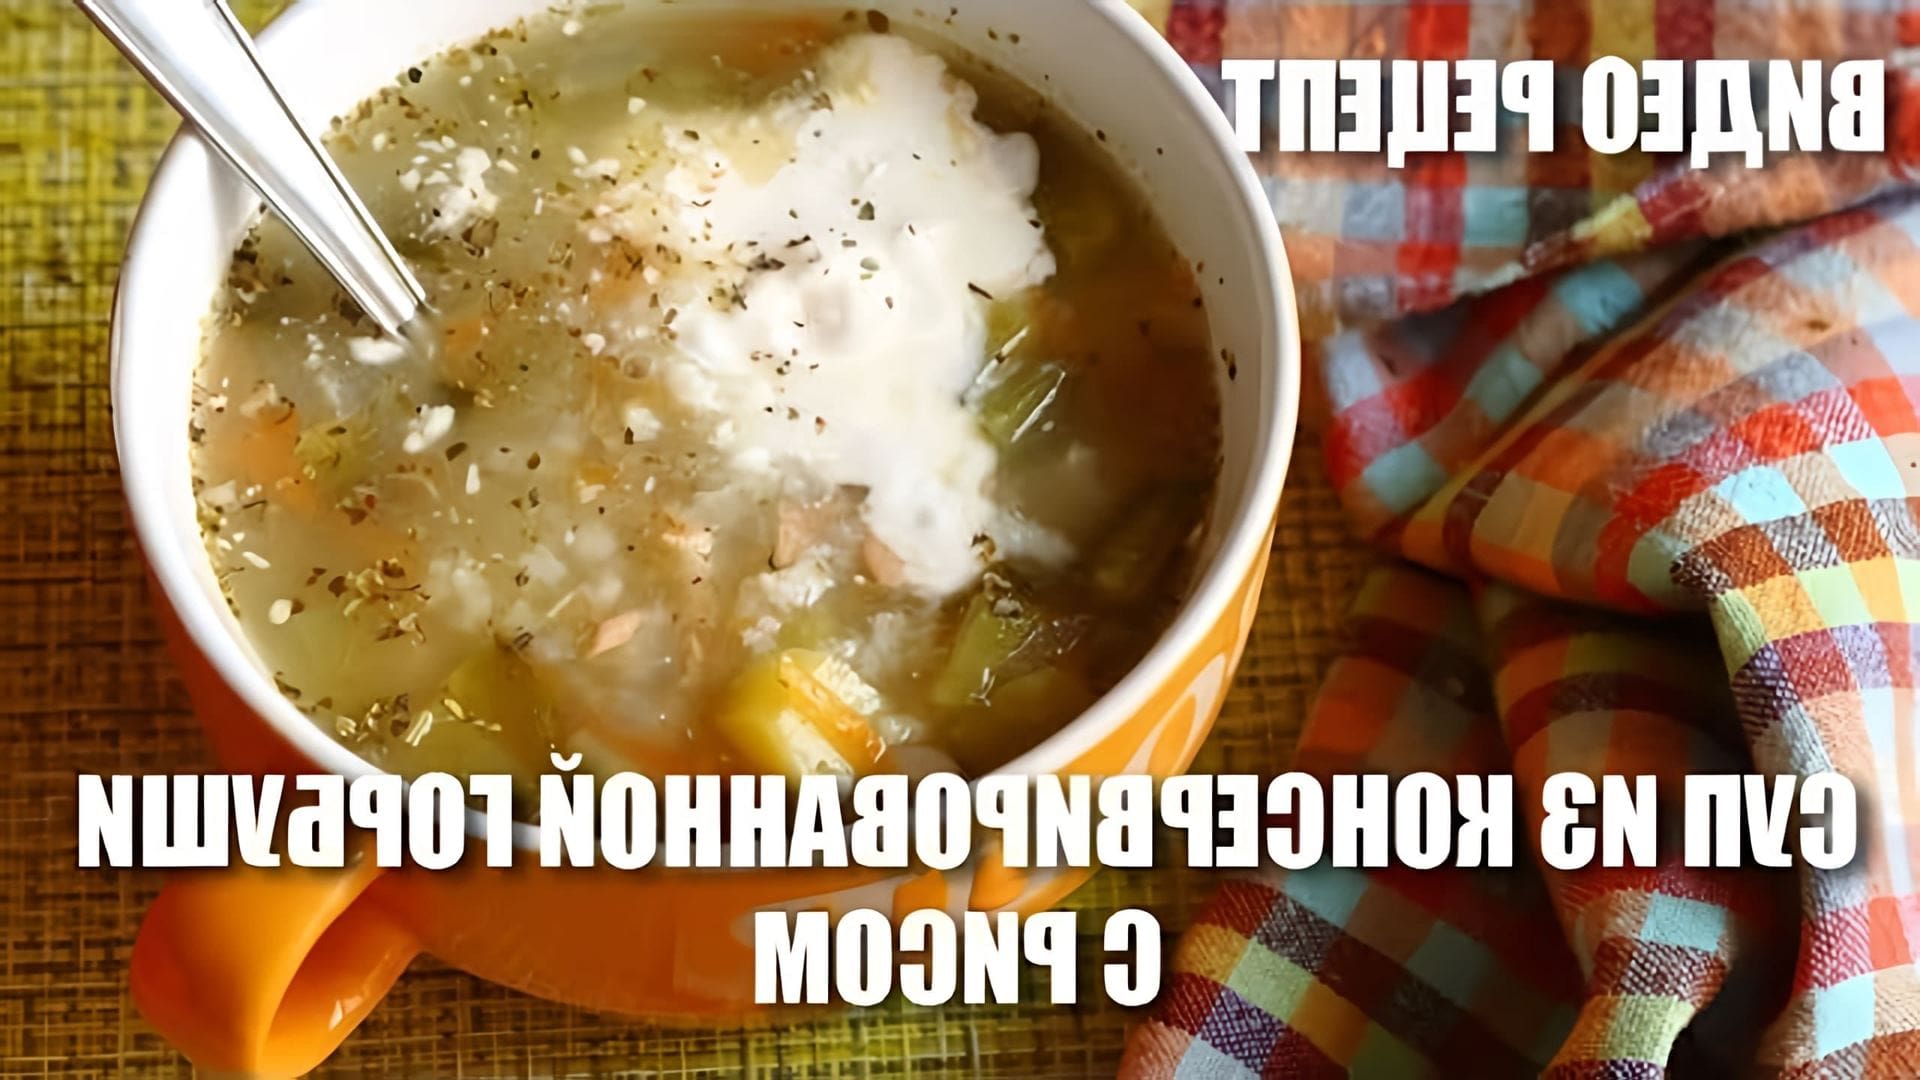 В этом видео демонстрируется рецепт приготовления супа из консервированной горбуши с рисом